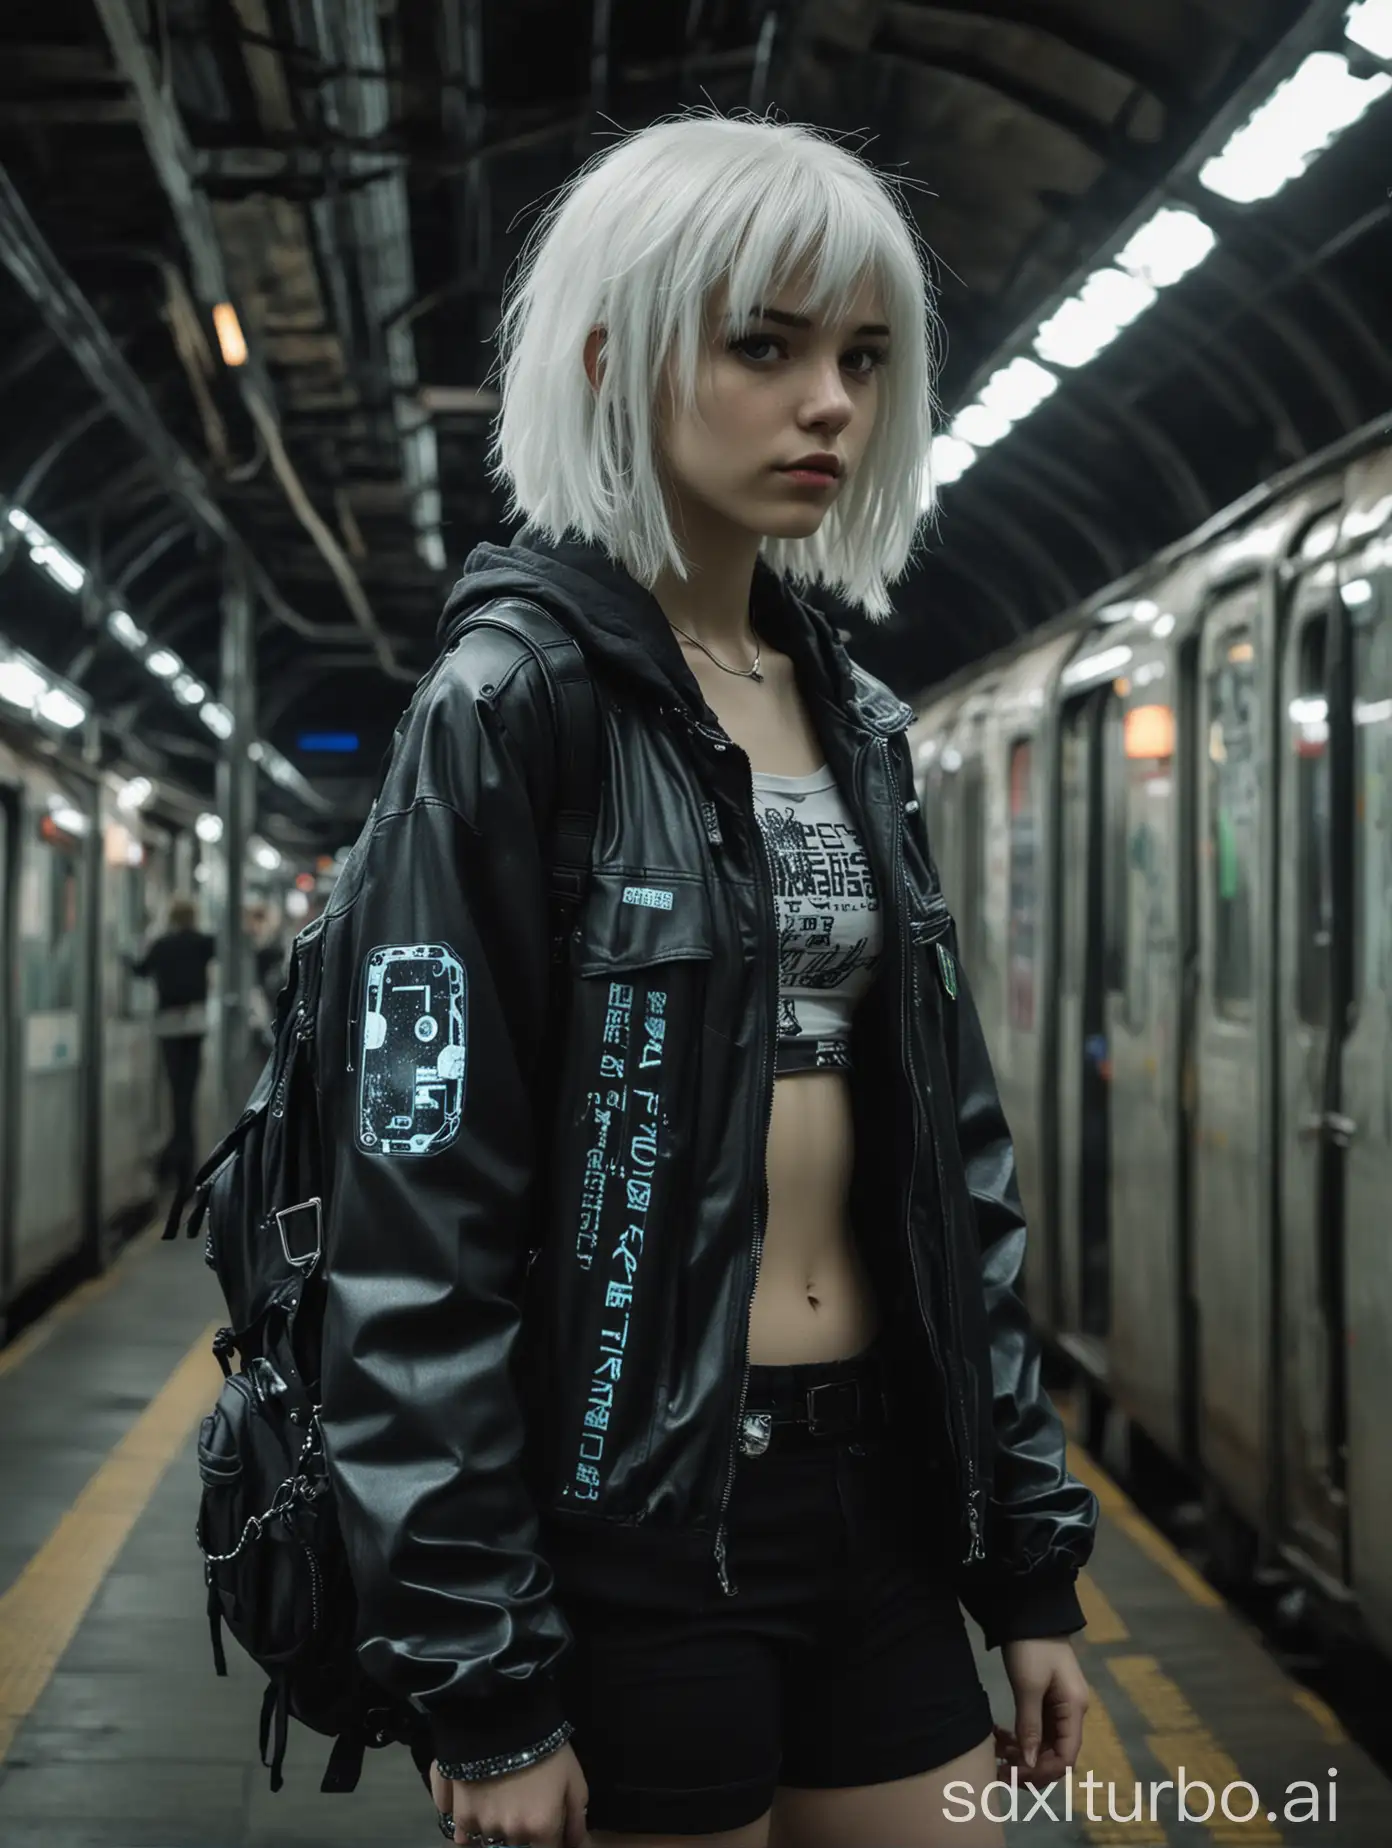 Futuristic-Teen-Femboy-Hacker-in-Dystopian-Cyberpunk-Subway-Station